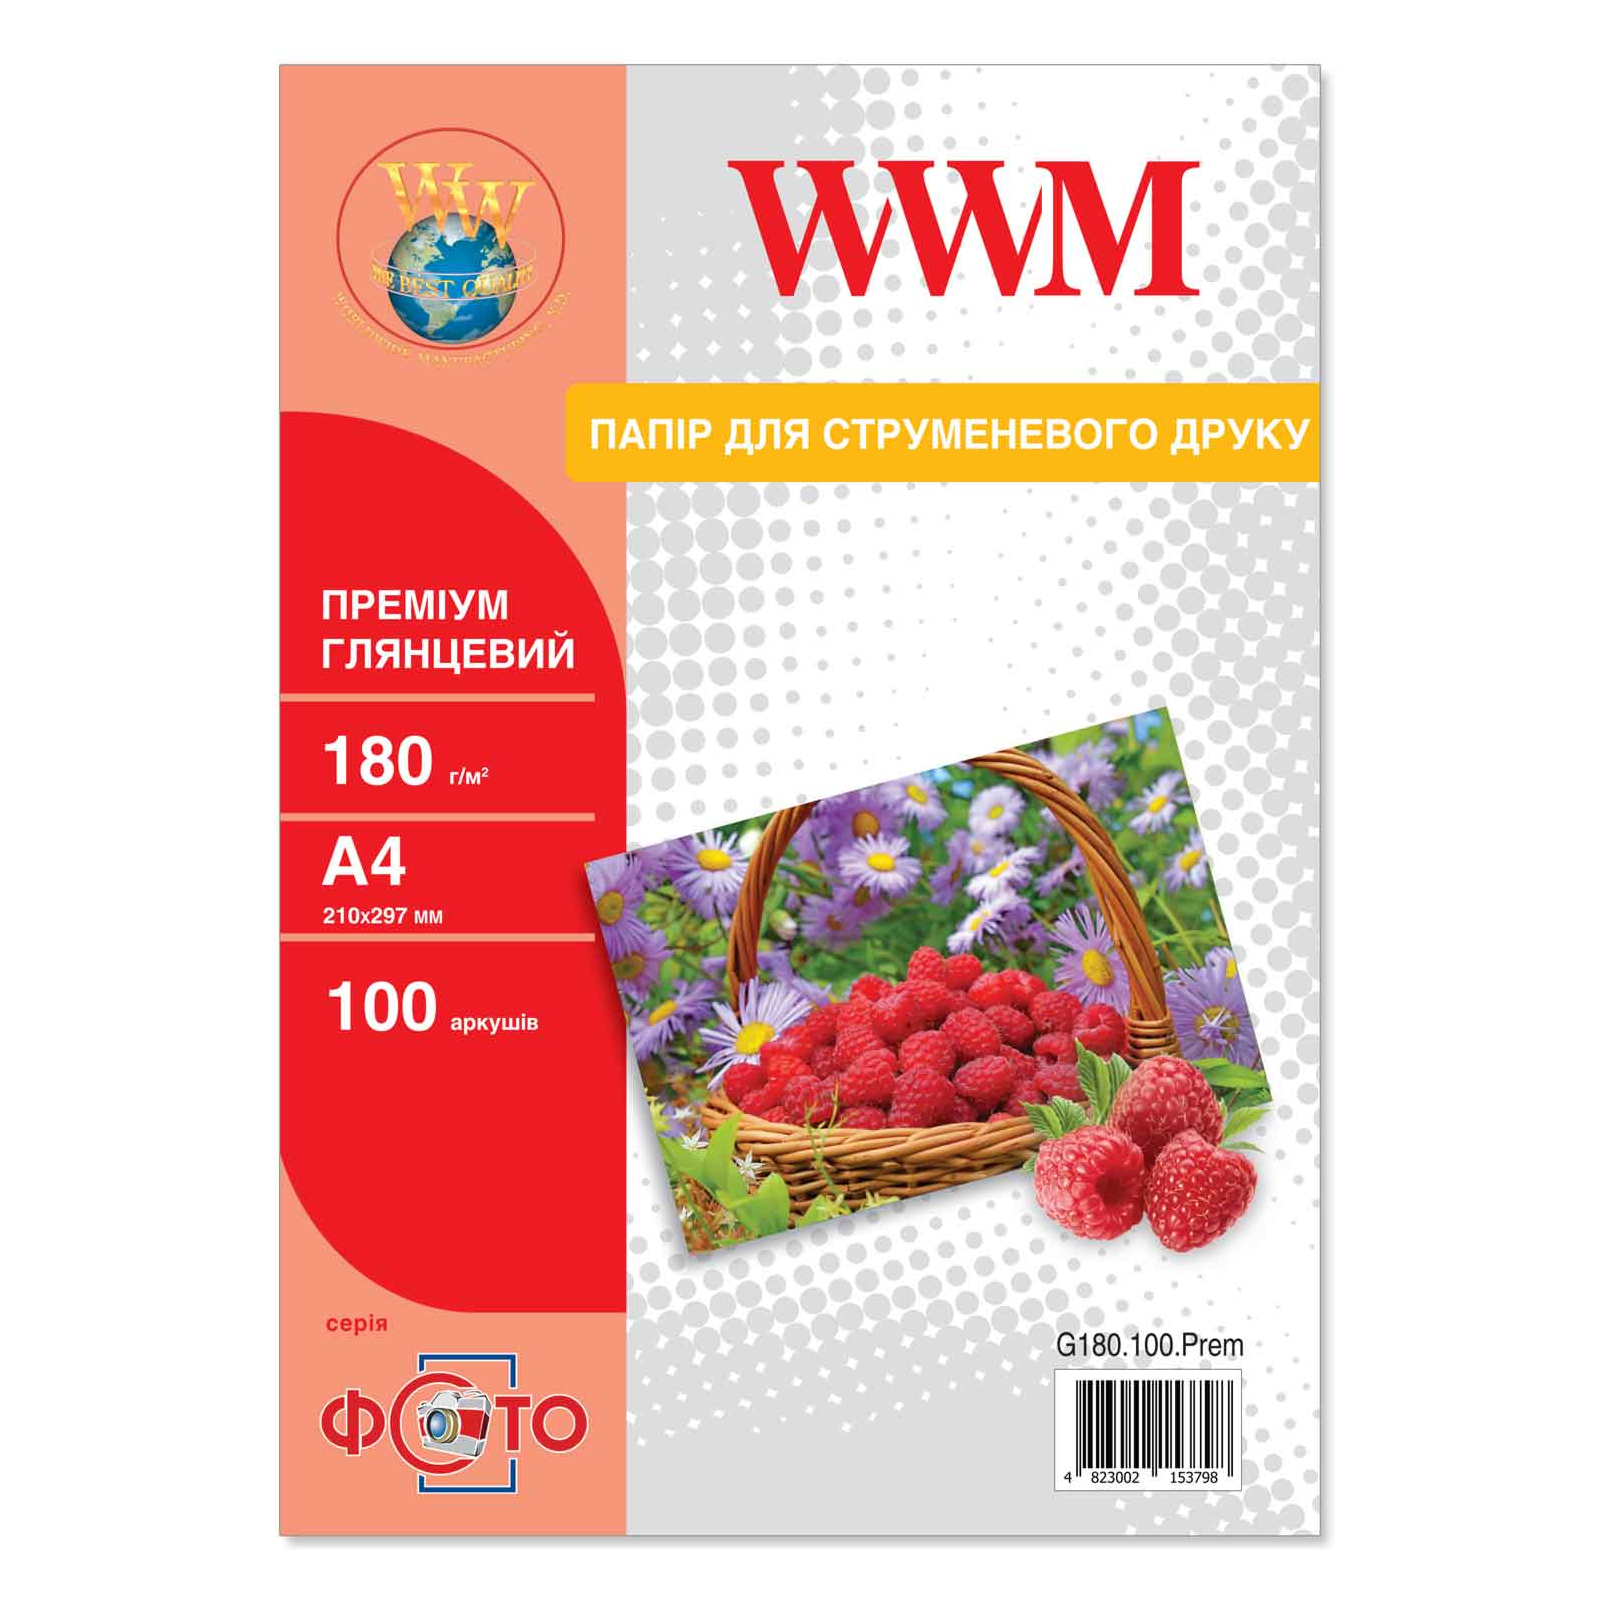 Фотопапір A4 Premium WWM (G180.100.Prem)